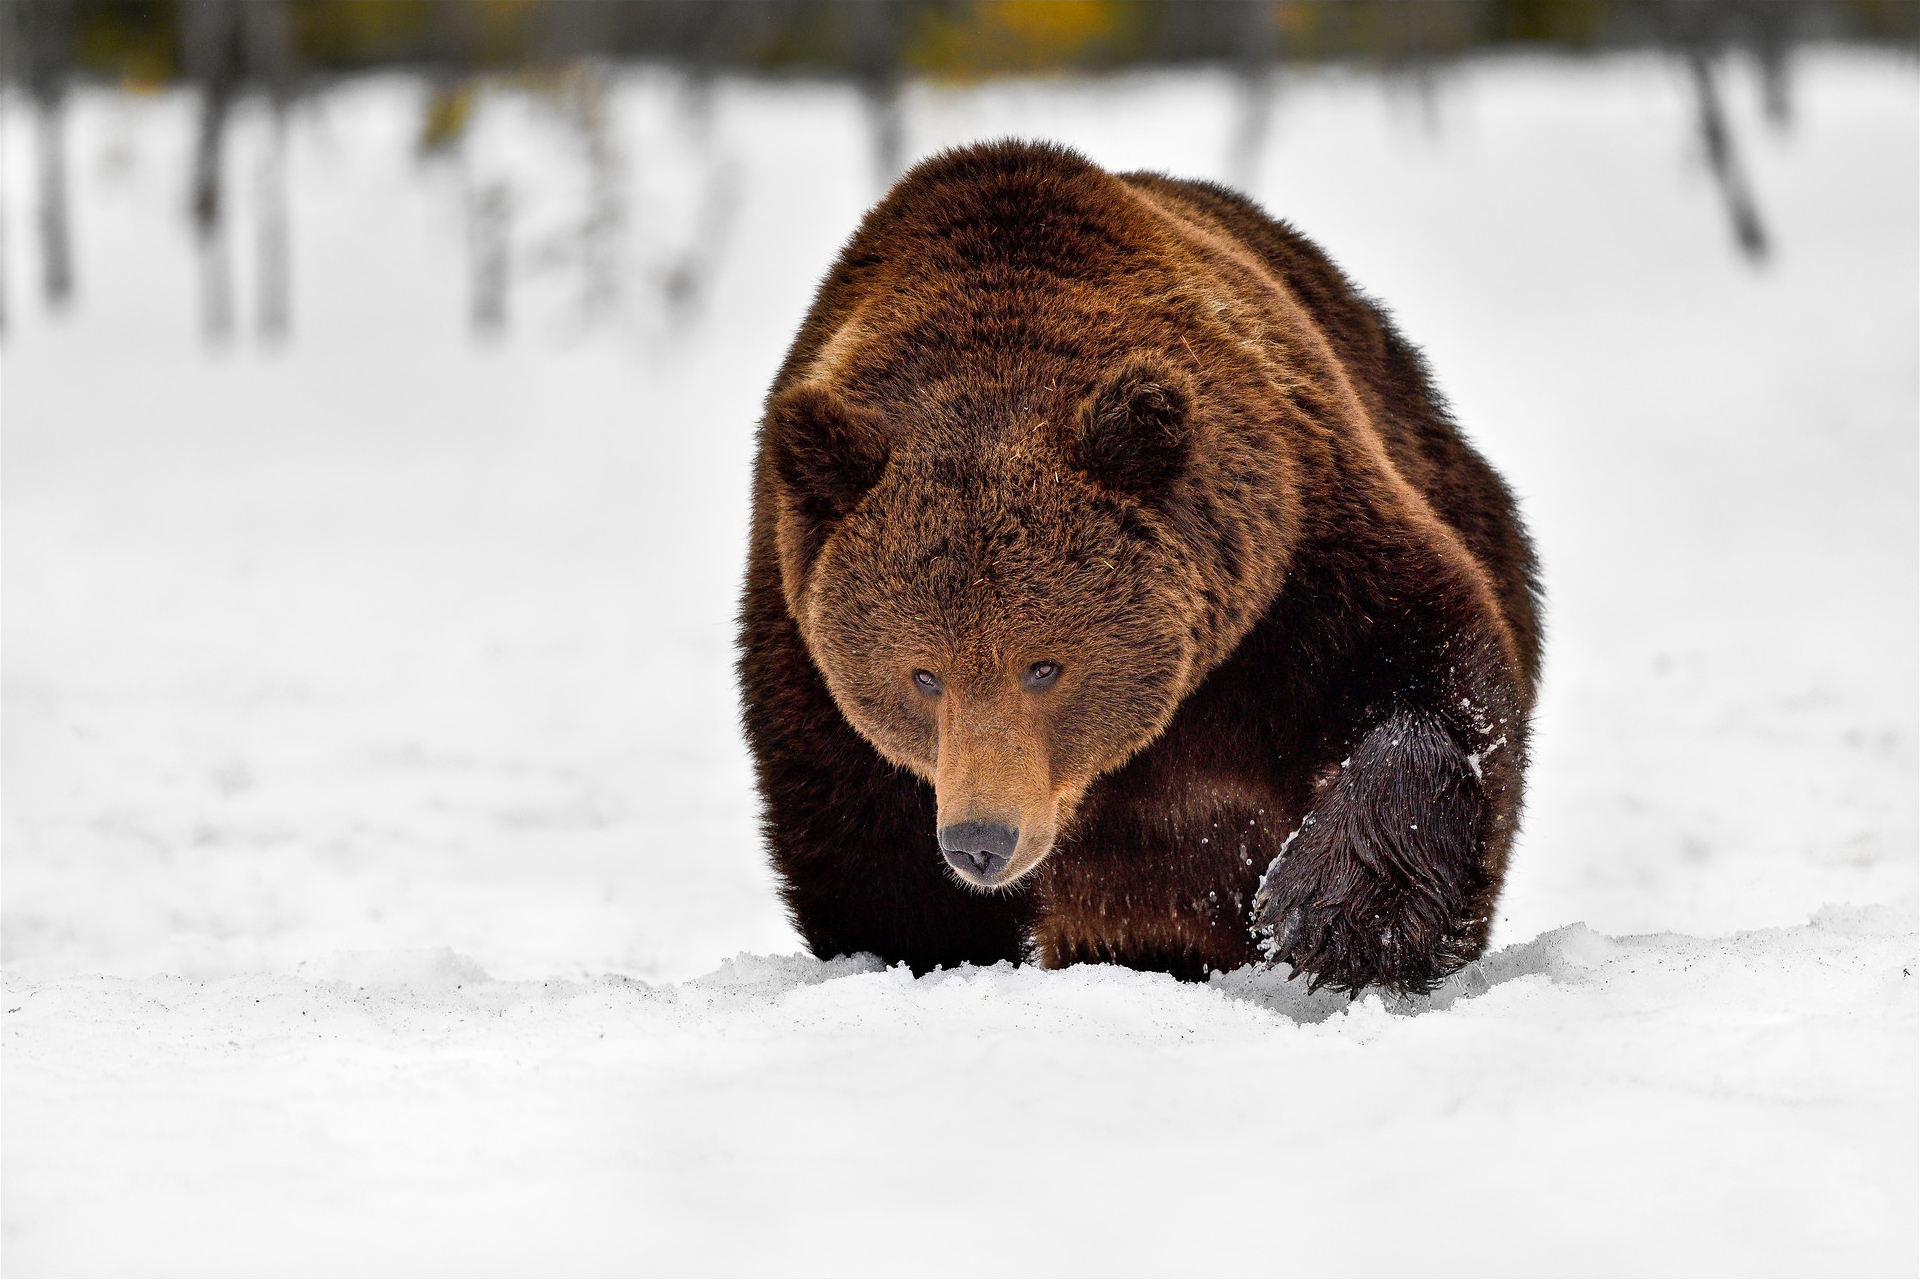 Скачать обои бесплатно Животные, Зима, Снег, Медведи, Медведь картинка на рабочий стол ПК